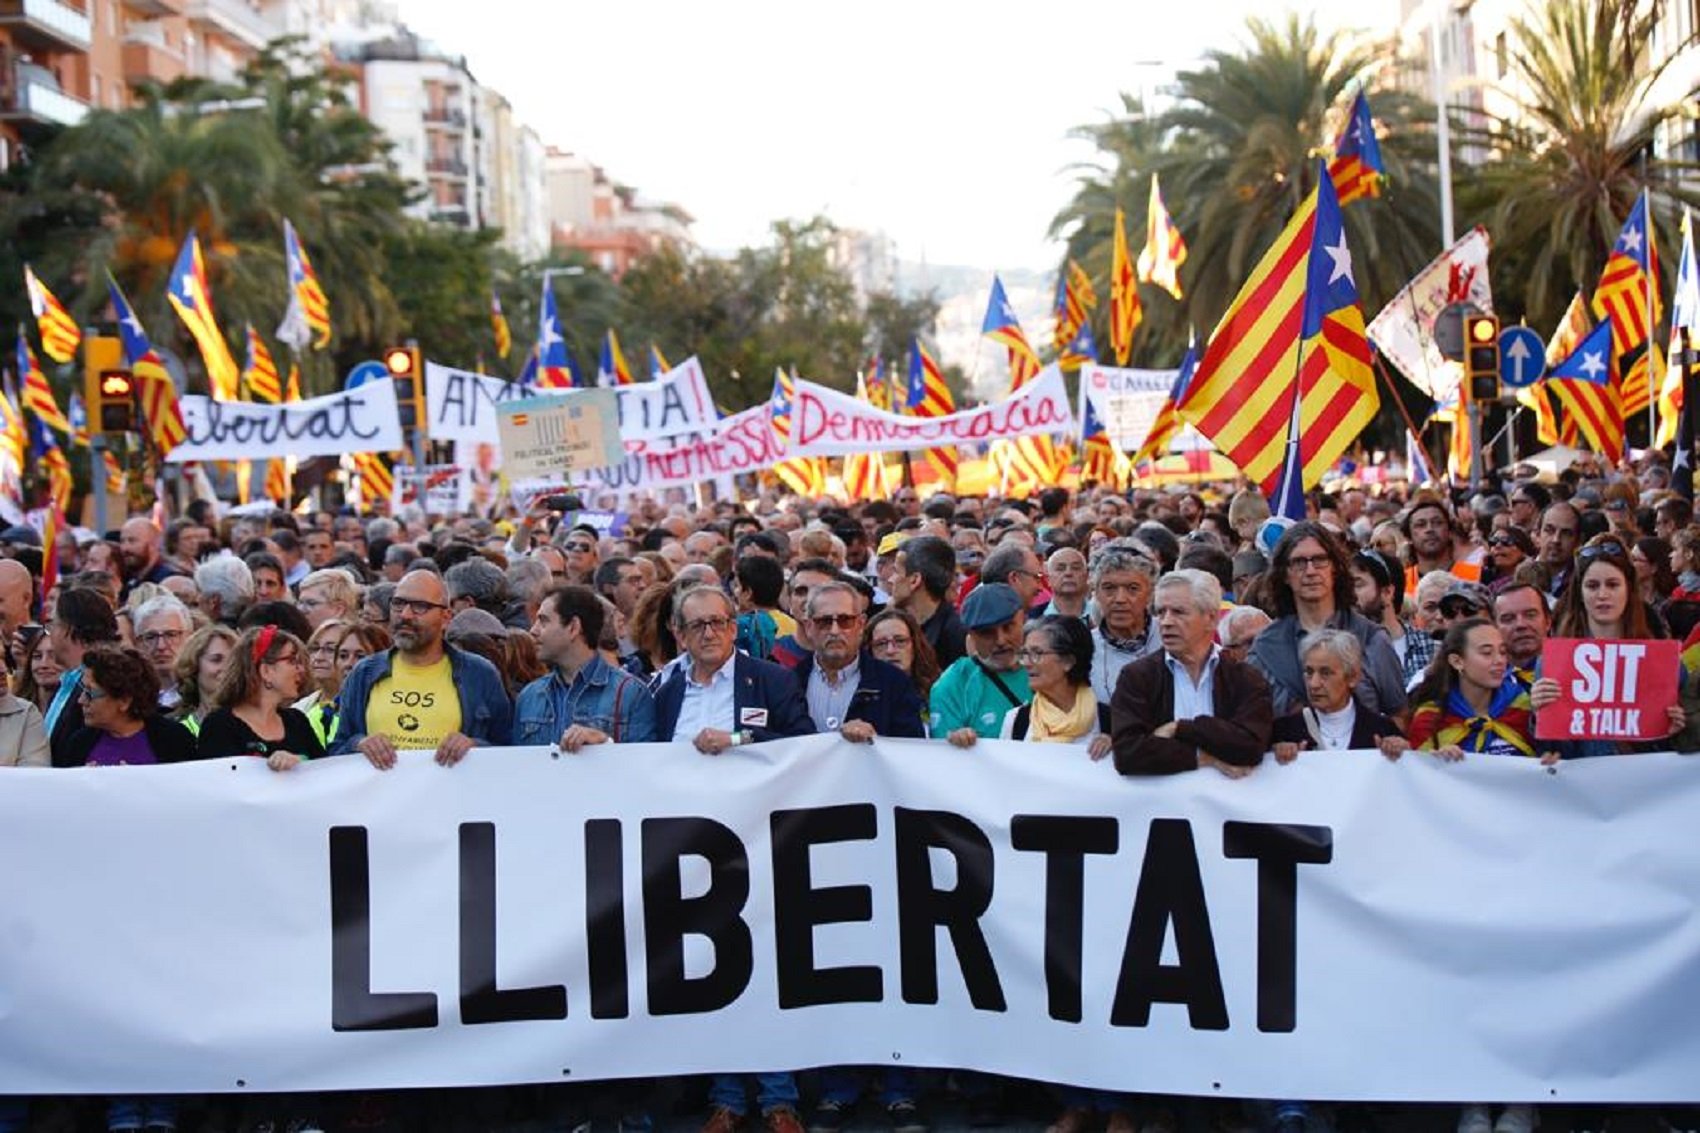 Barcelona clama per la llibertat i contra la repressió